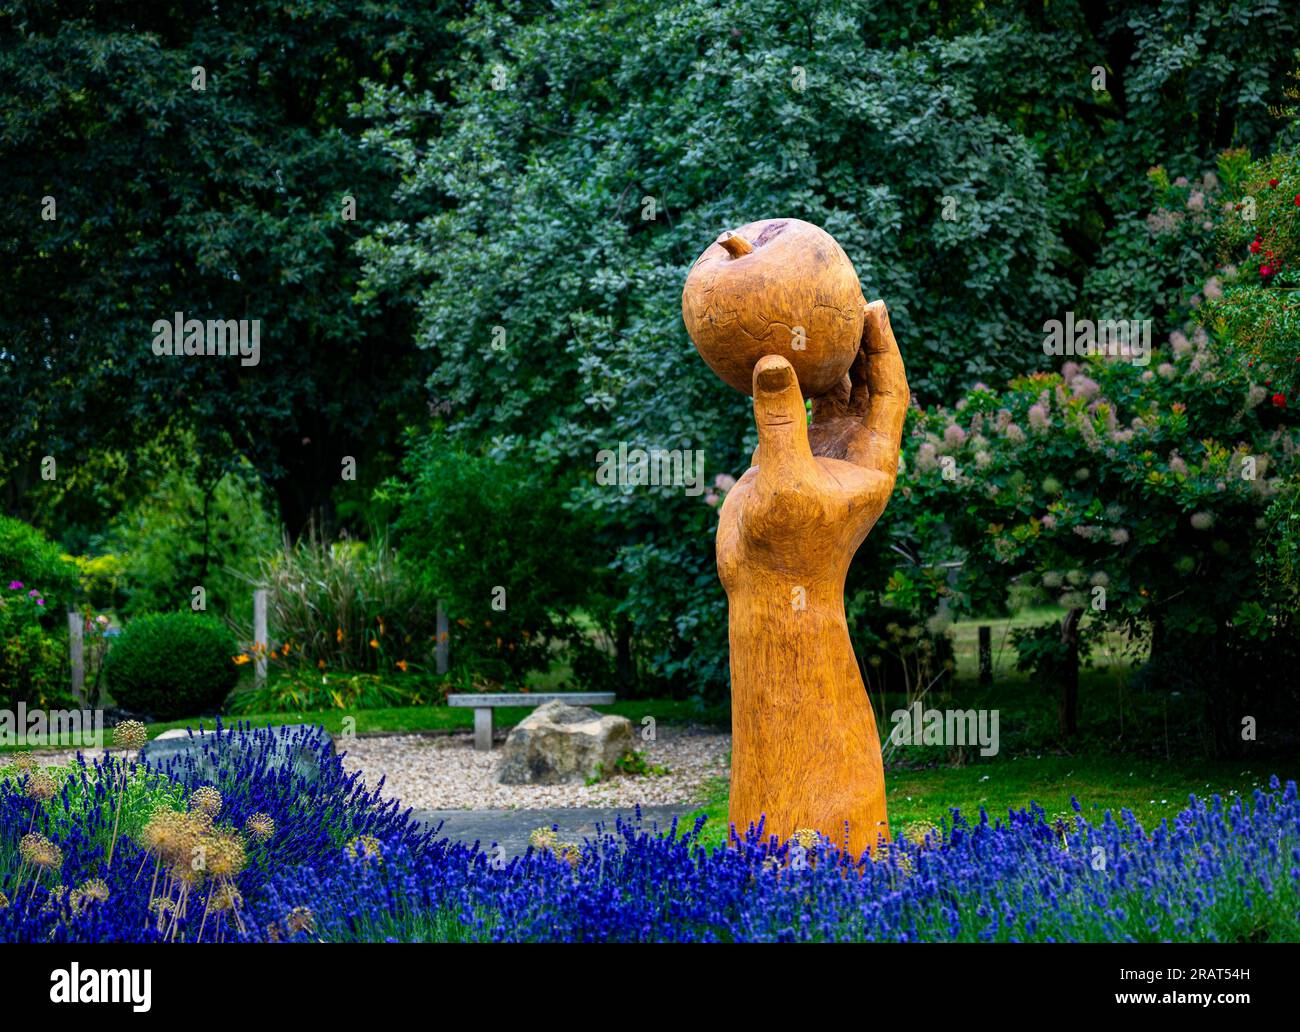 Wyndham Park, Grantham, Lincolnshire, Royaume-Uni. Une sculpture sculptée en bois dur appelée Isaac’s Apple nommée d’après Sir Isaac Newton qui est né localement puis a fréquenté la Kings School de la ville Banque D'Images